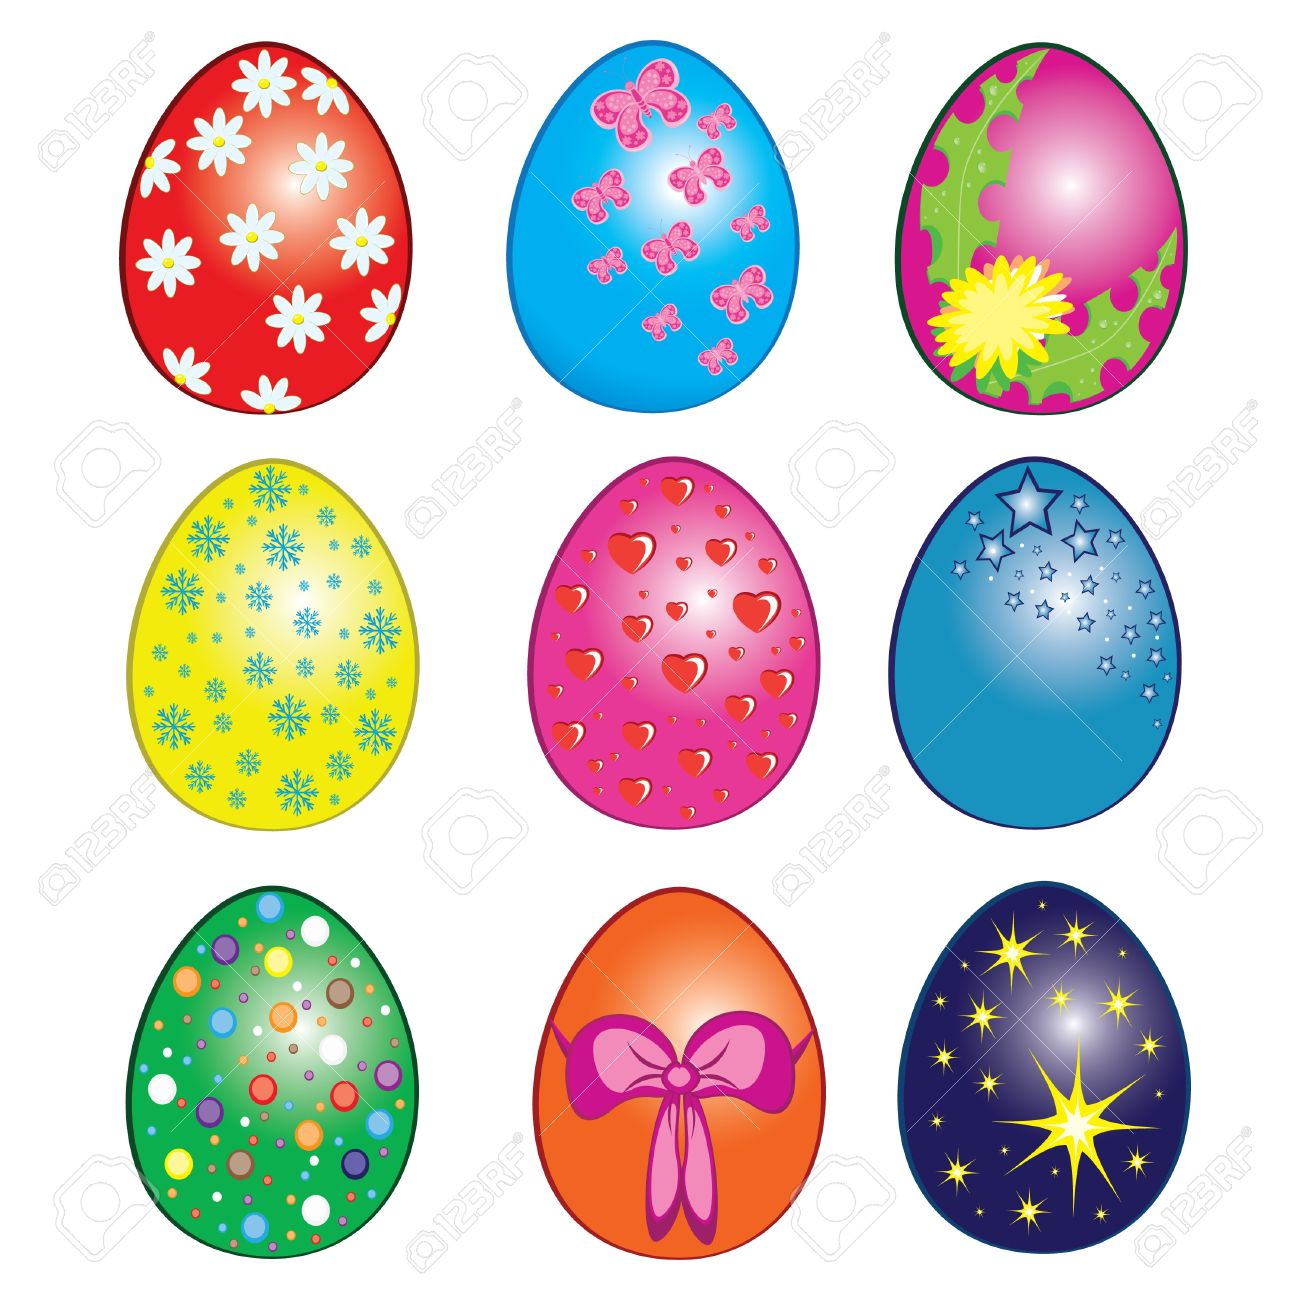 Easter eggs, Happy Easter Clip Art. Illustration on white.